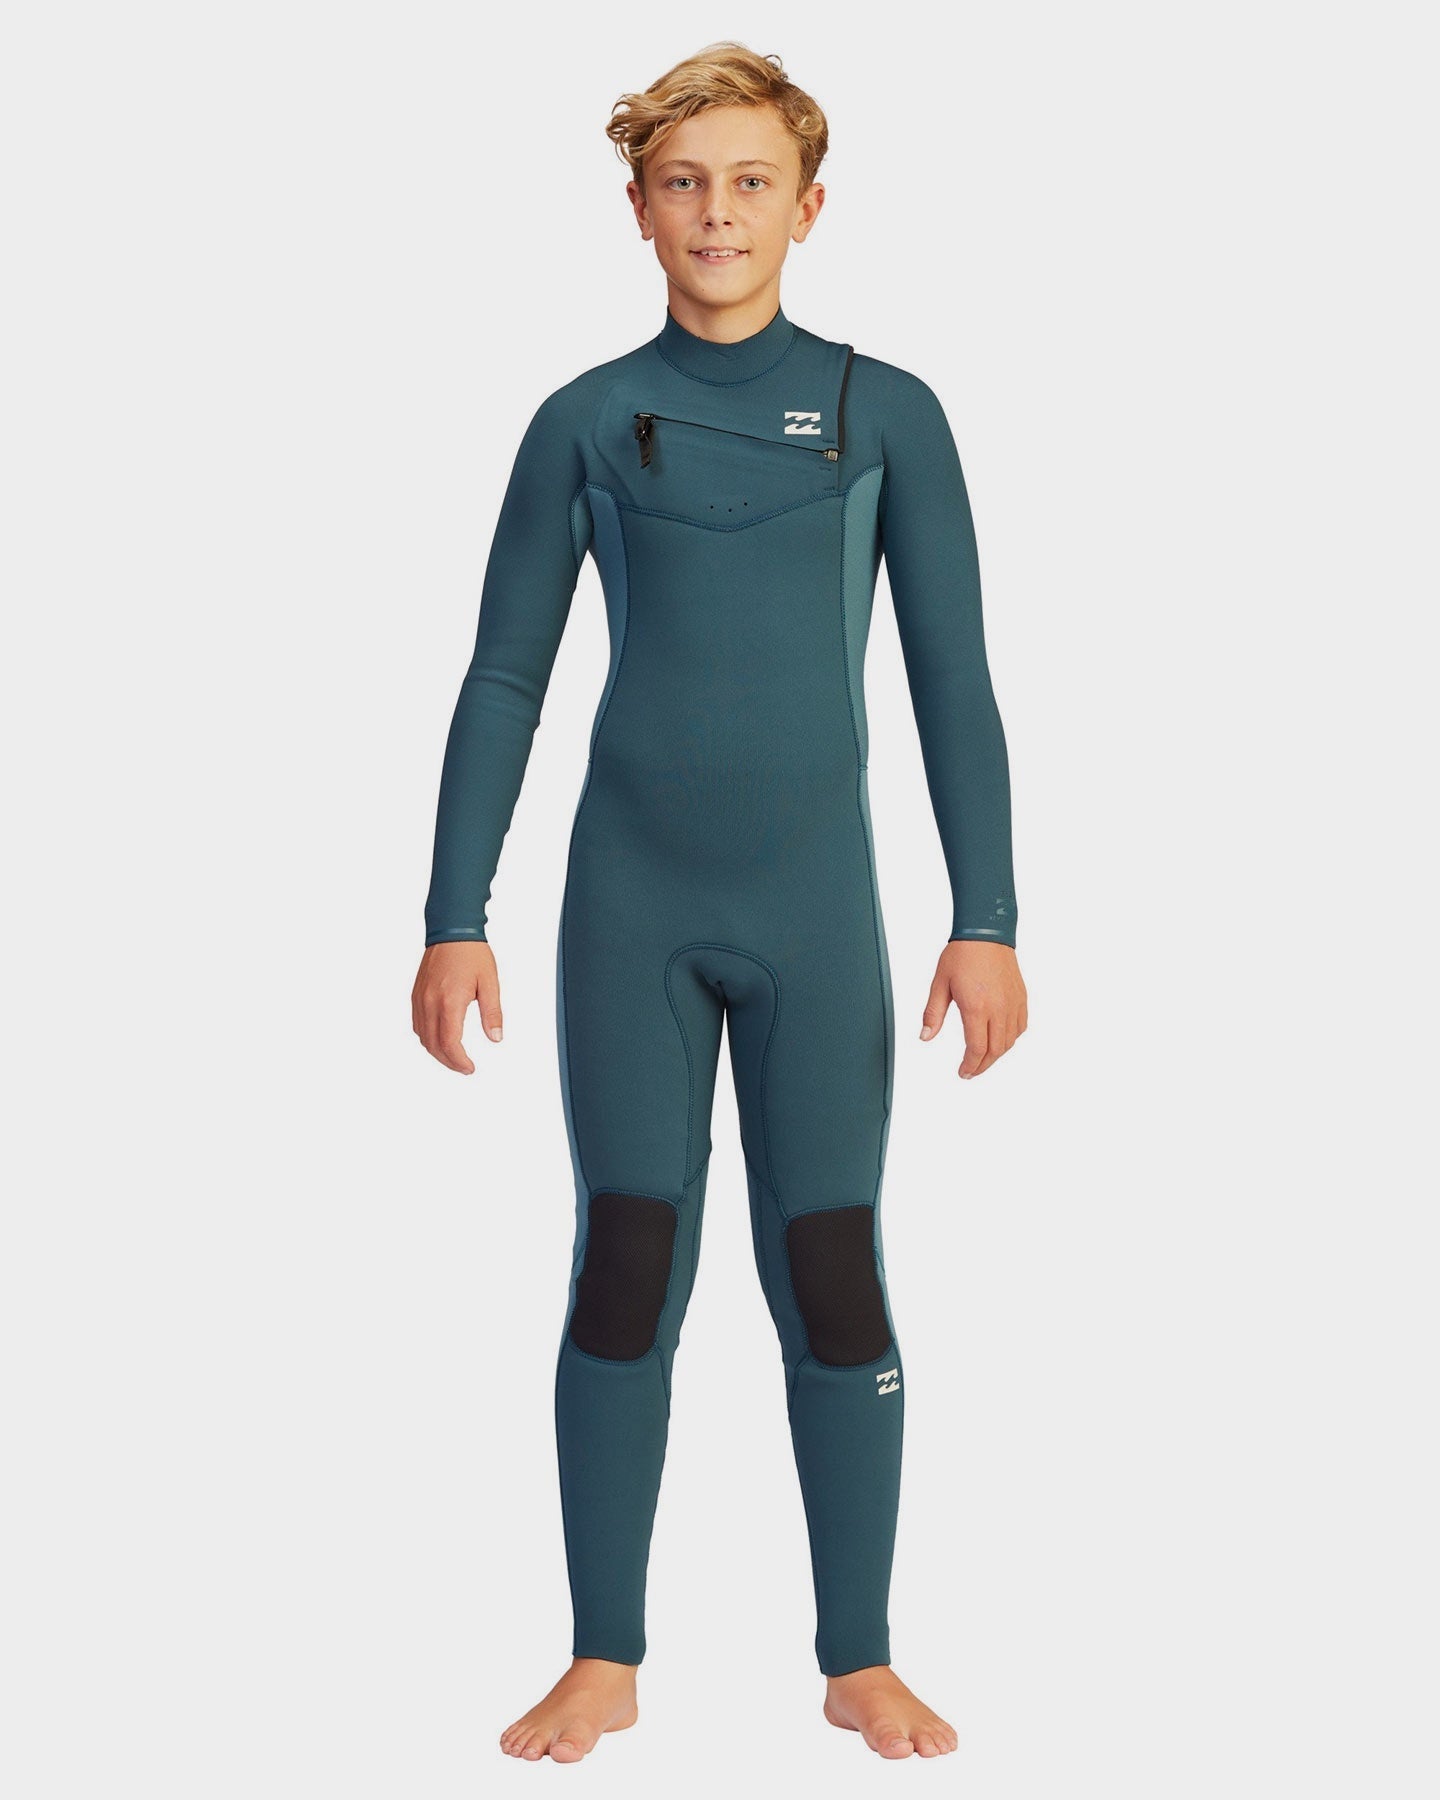 Billabong Boy's 3/2 Revolution Wetsuit – JS Industries USA